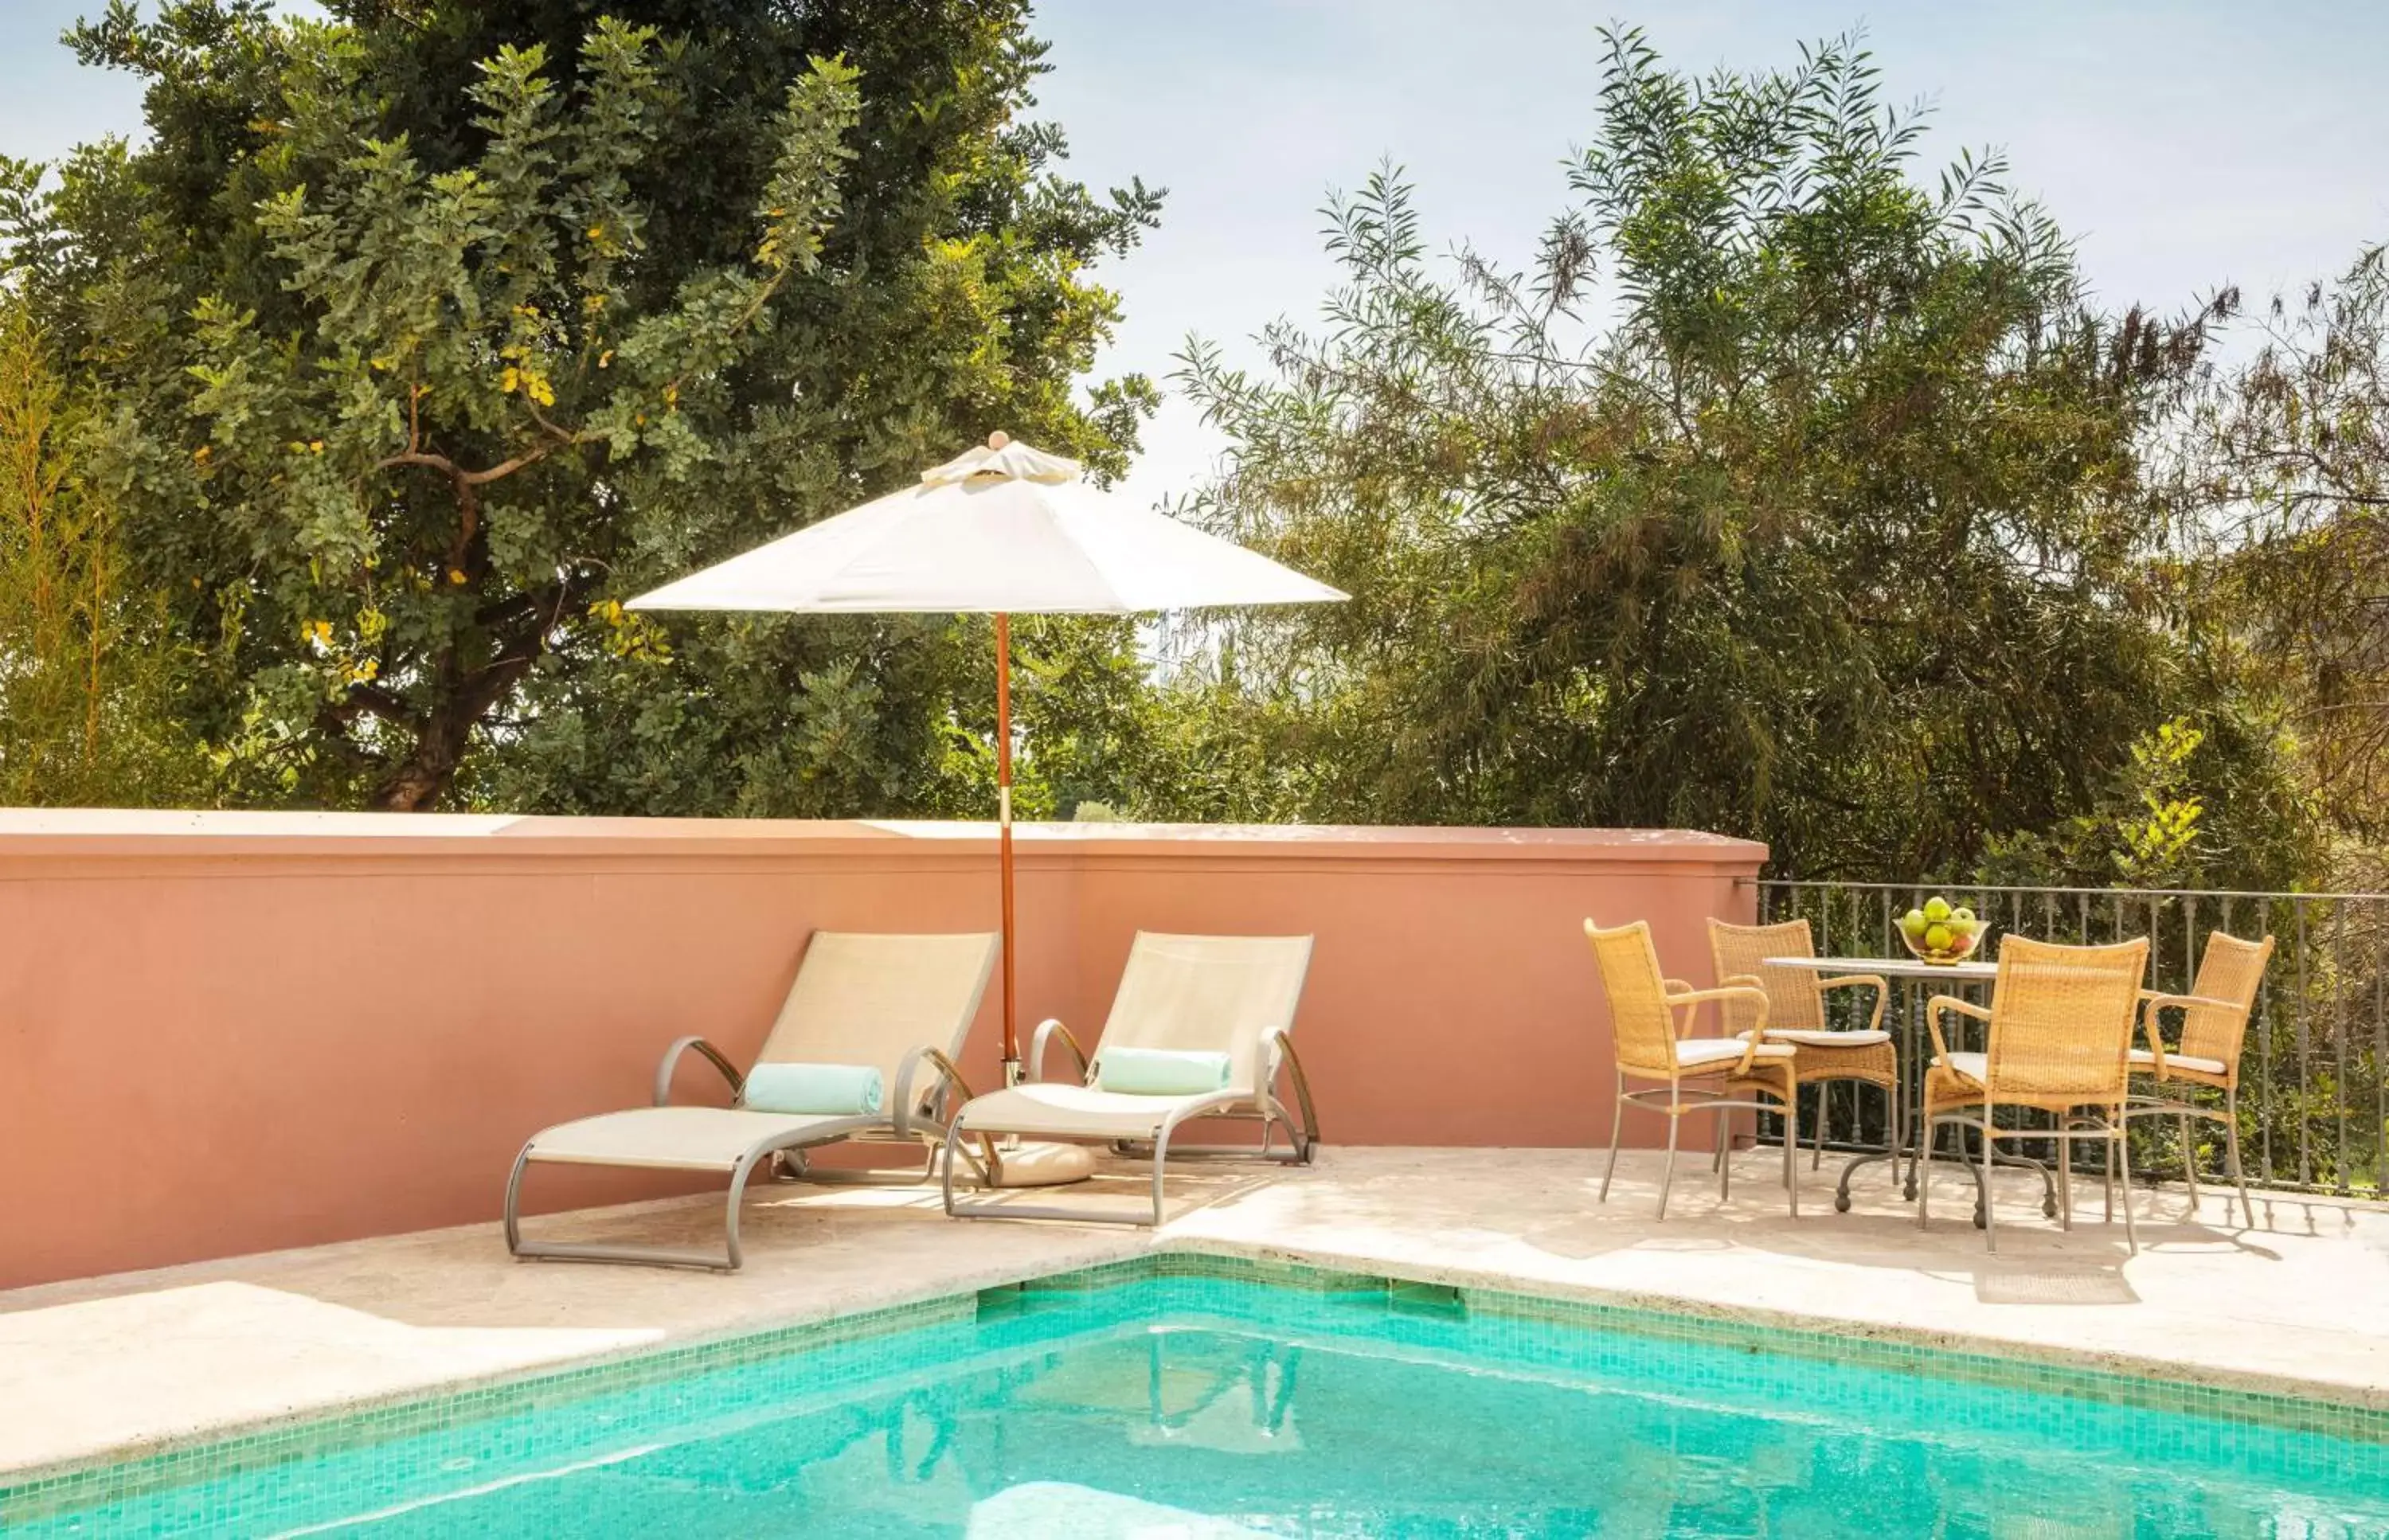 Seating area, Swimming Pool in Anantara Villa Padierna Palace Benahavís Marbella Resort - A Leading Hotel of the World